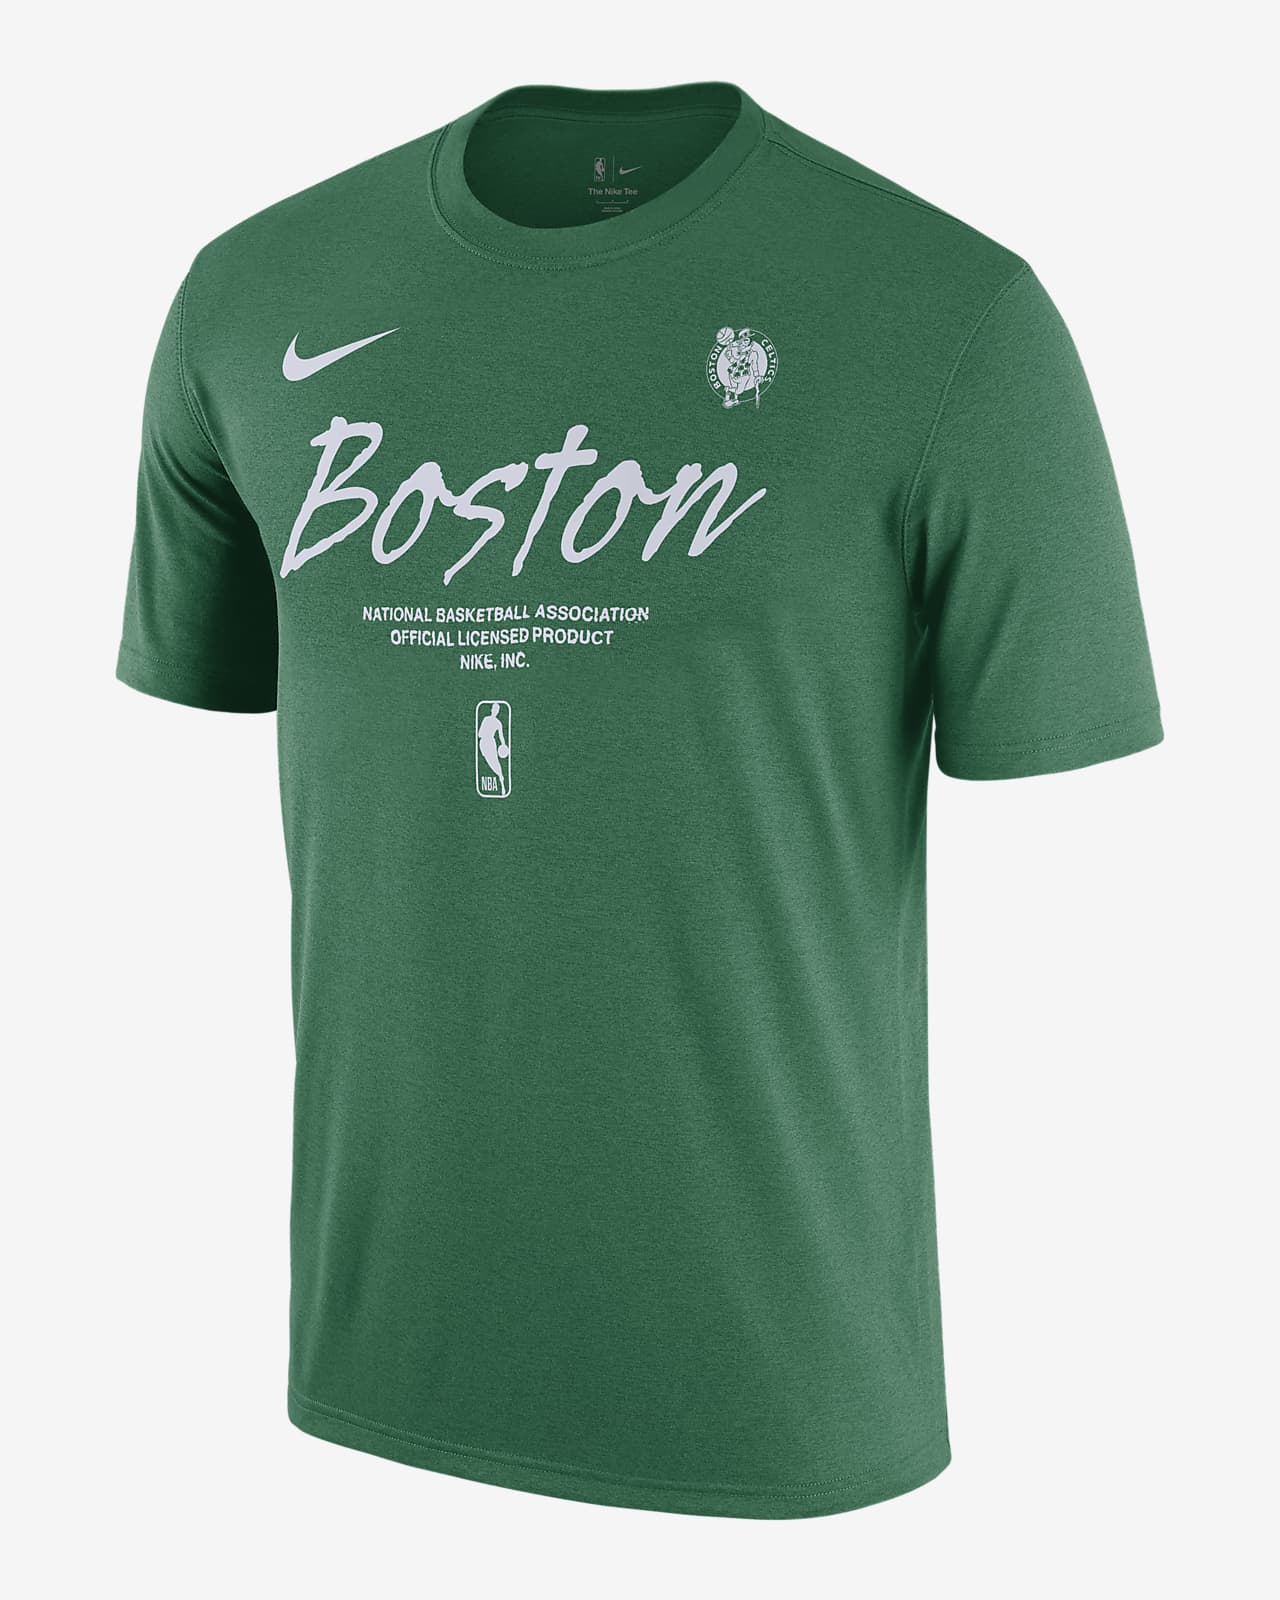 Playera Nike de la NBA para hombre Boston Celtics Essential